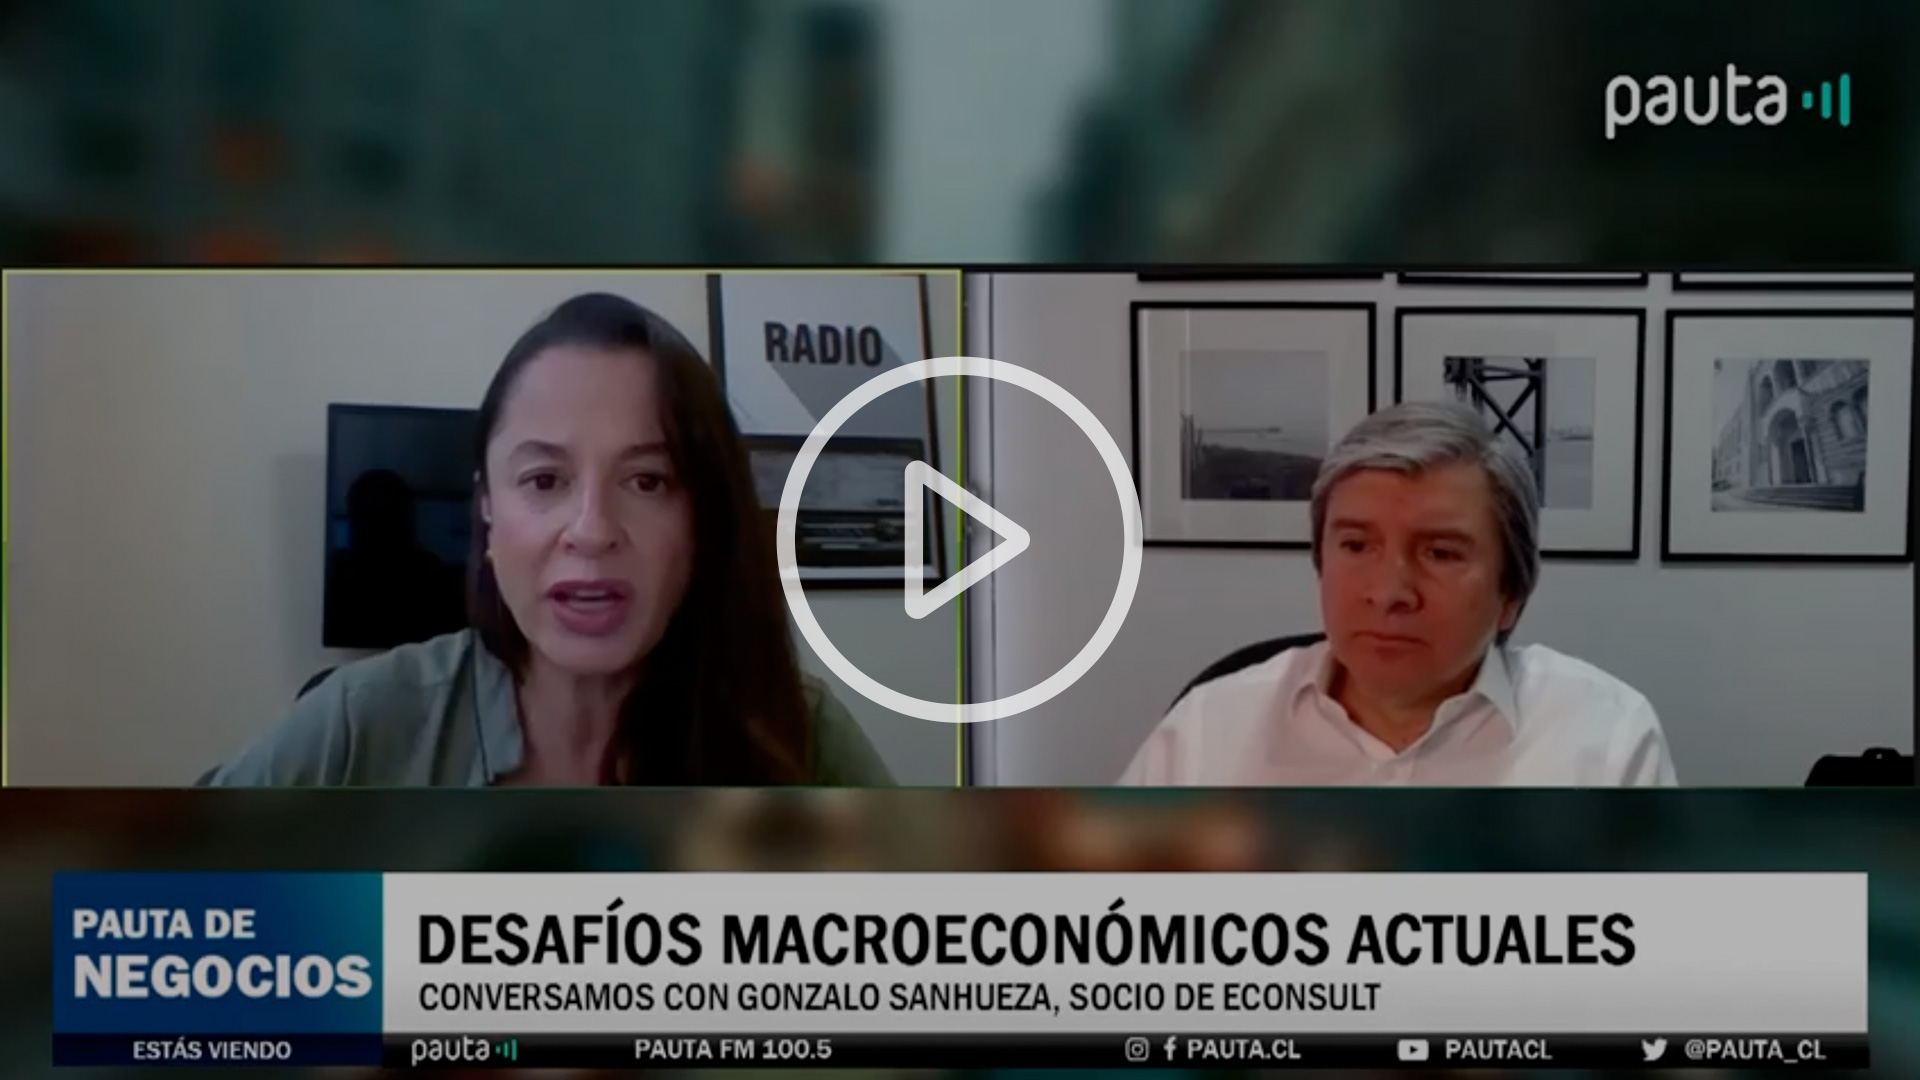 Gonzalo Sanhueza, socio de Econsult conversó sobre los desafíos macroeconómicos actuales